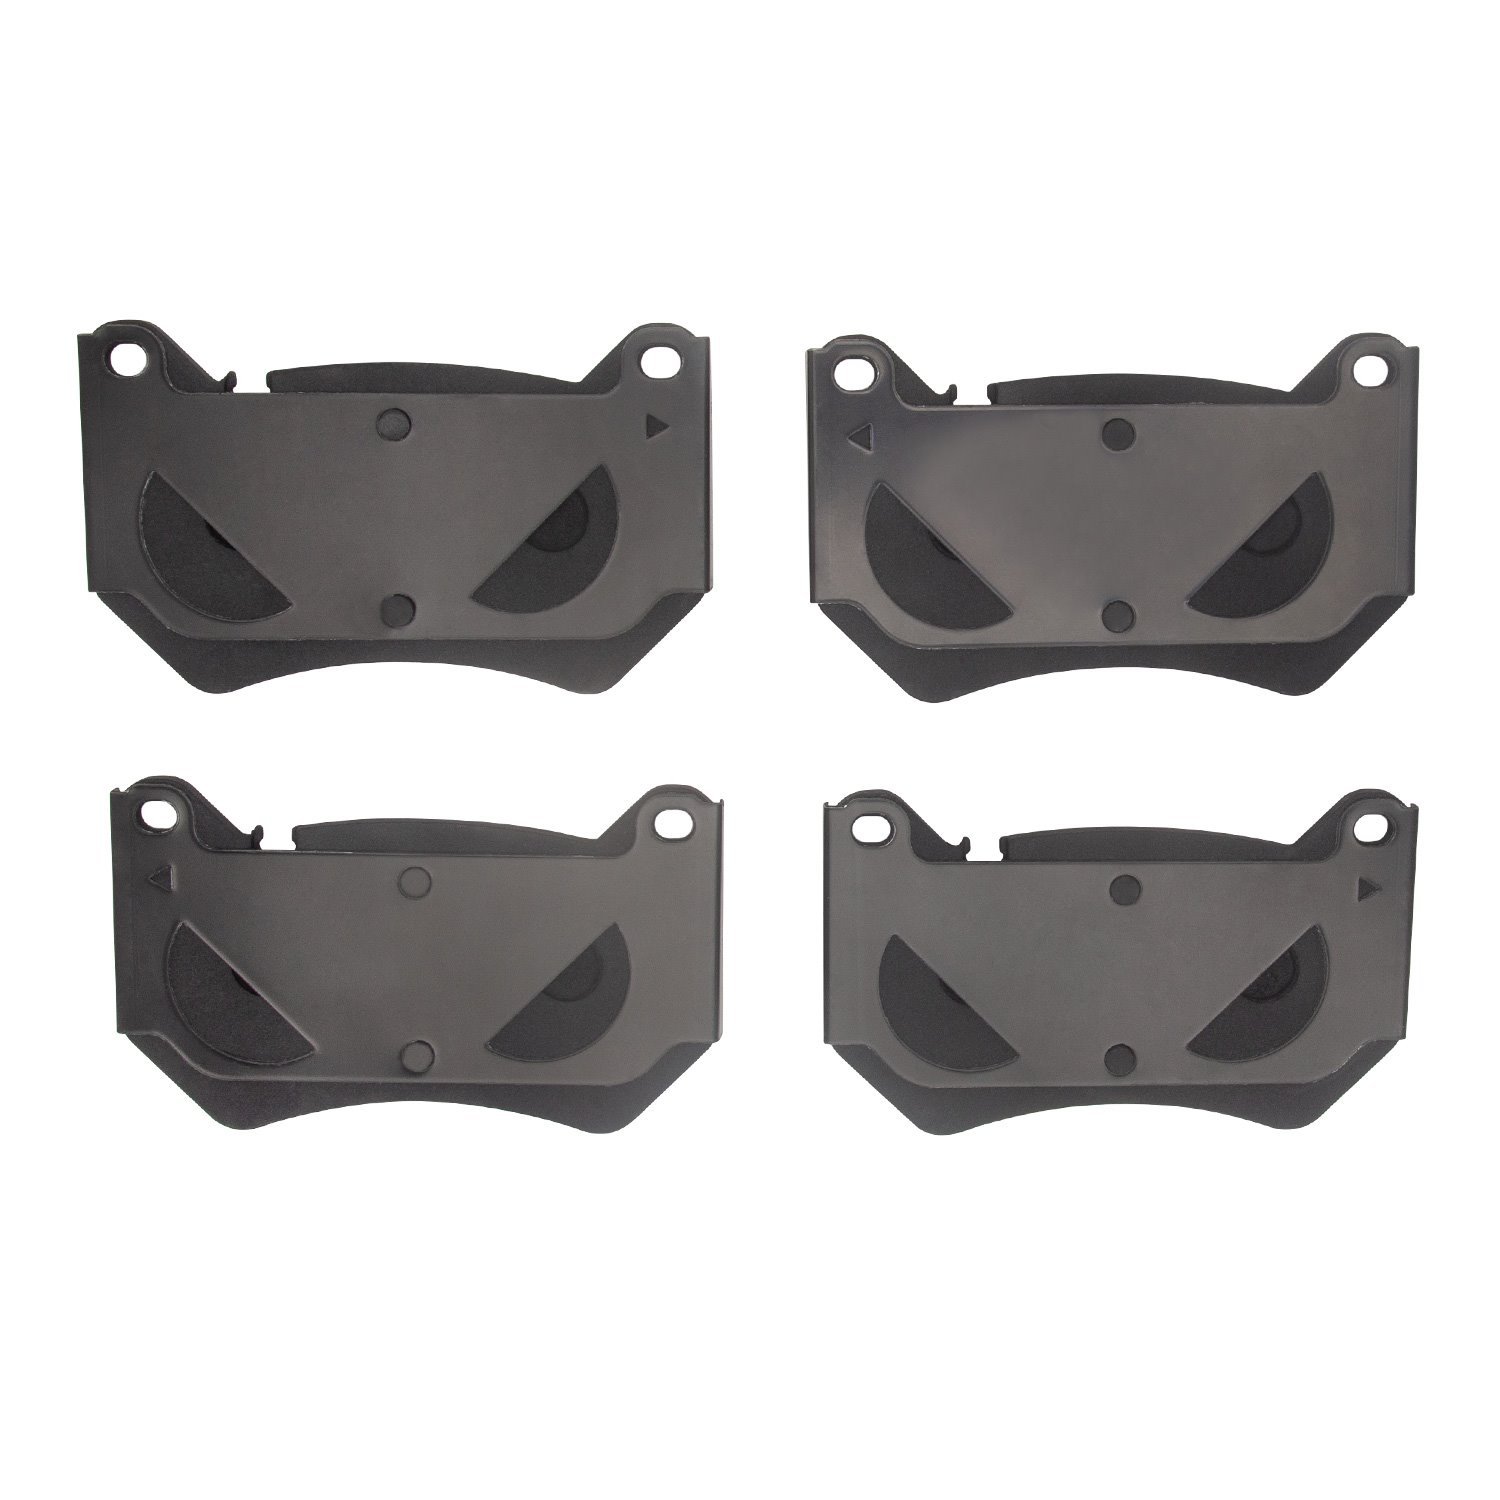 3000-Series Ceramic Brake Pads, Fits Select Audi/Volkswagen